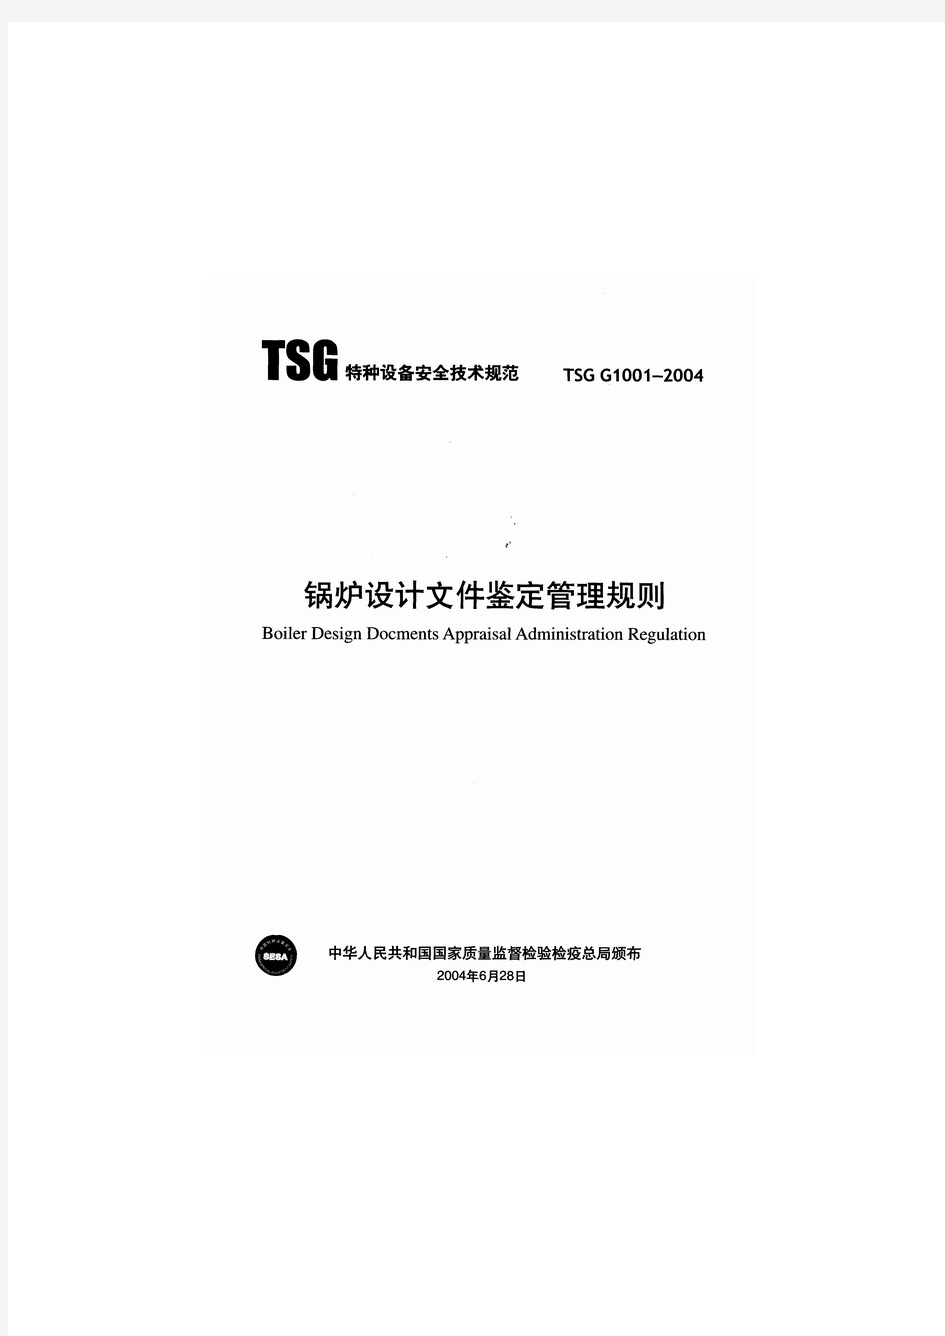 TSG G1001-2004锅炉设计文件鉴定管理规则